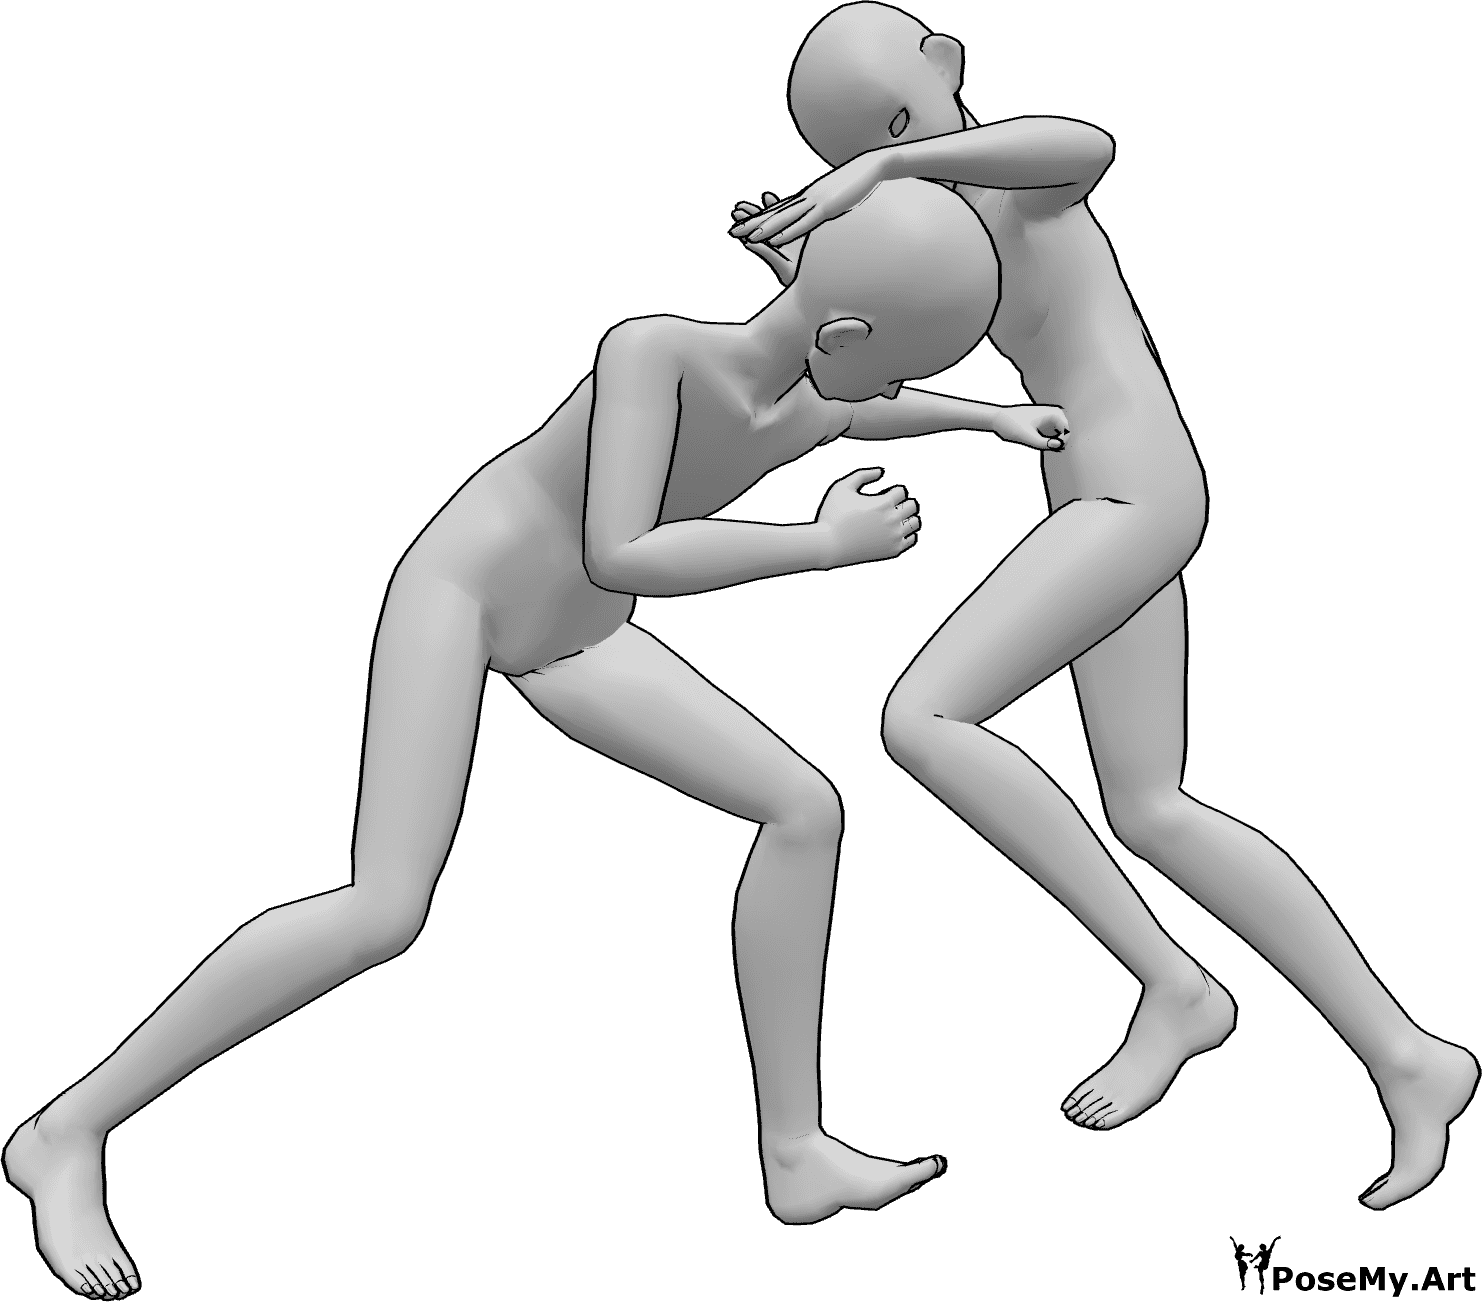 Riferimento alle pose- Posa da combattimento in stile anime - Due maschi anime stanno lottando, uno dà un pugno allo stomaco all'altro, l'altro lo prende a calci in testa con le ginocchia.